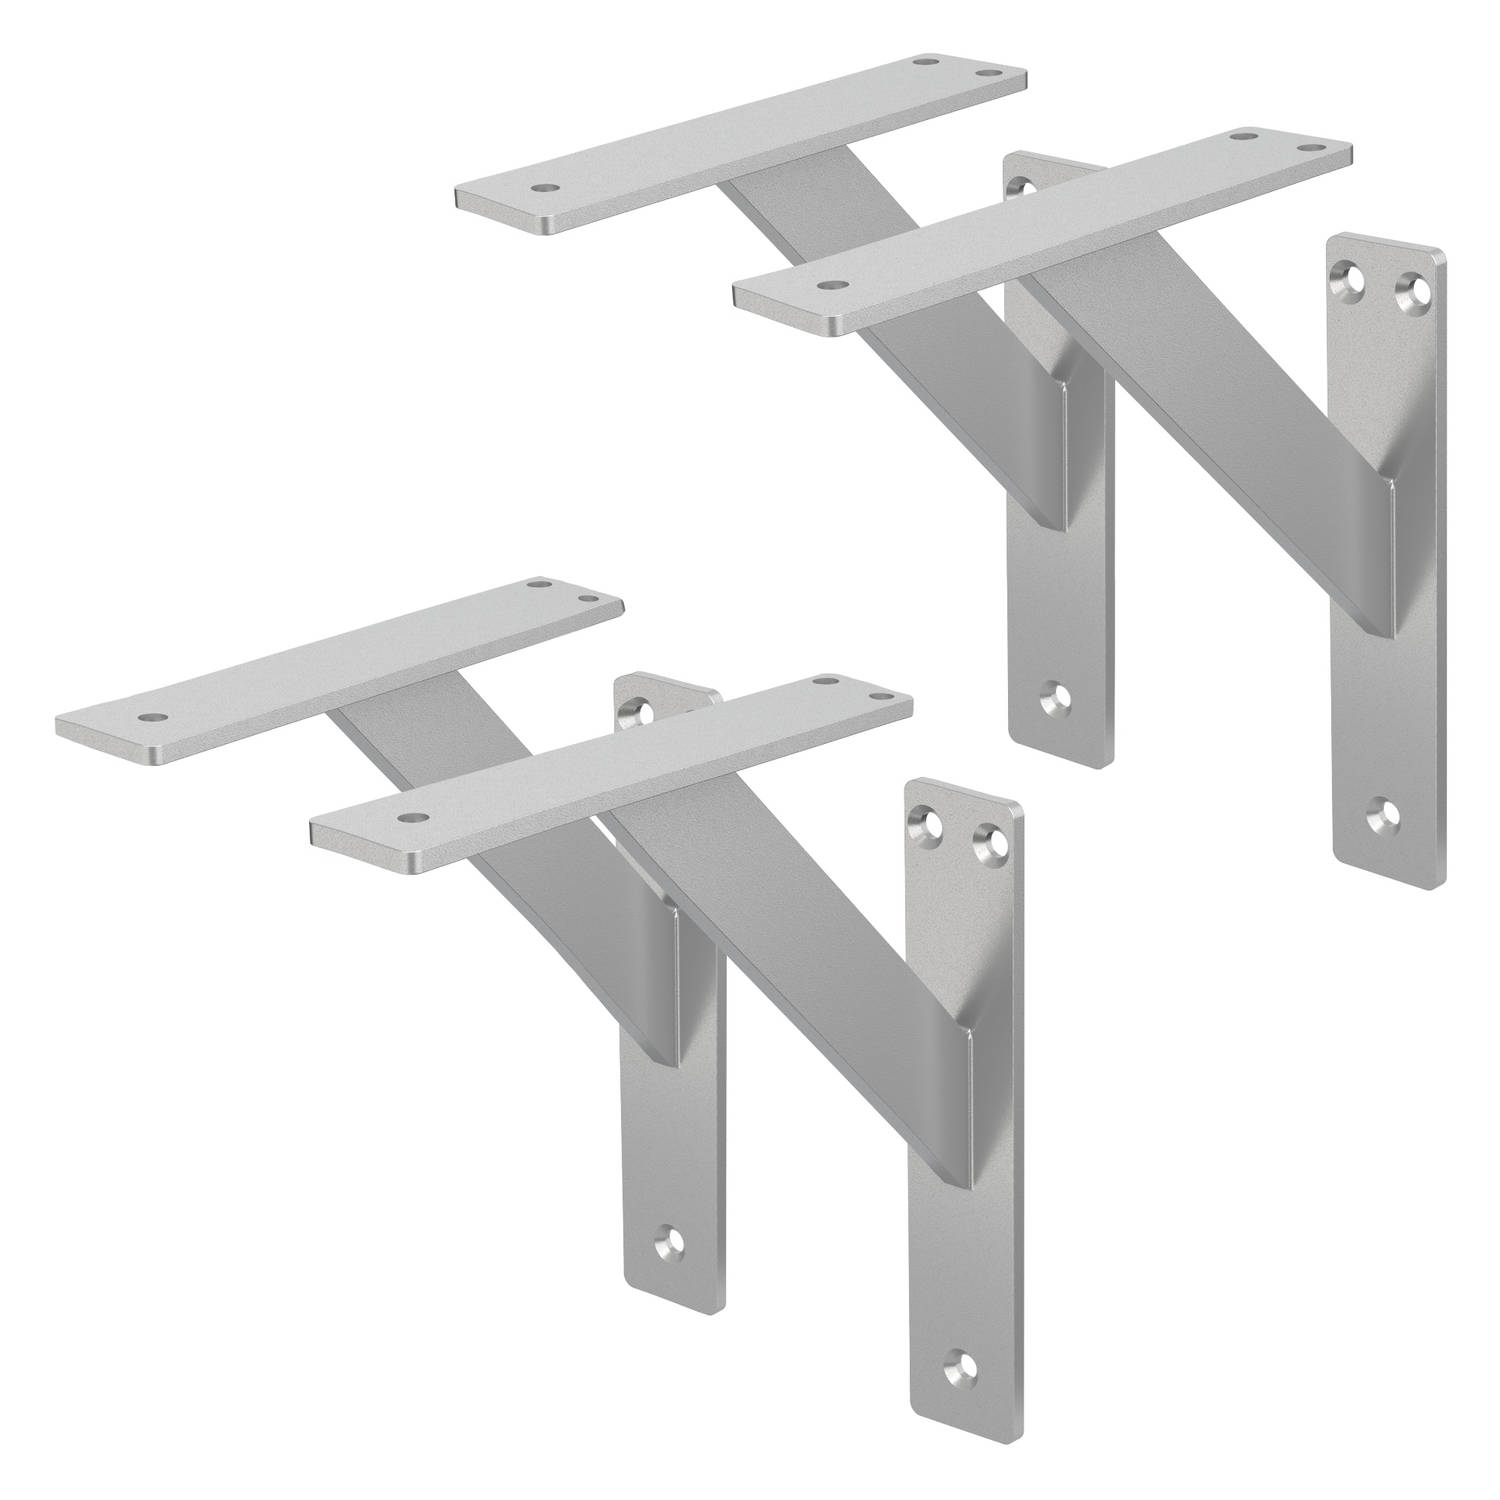 ML-Design 4 stuks plankdrager 180x180 mm, zilver, aluminium, zwevende plankdrager, plankdrager, wanddrager voor plankdrager, plankdrager voor wandmontage, wandplankdrager plankdrag